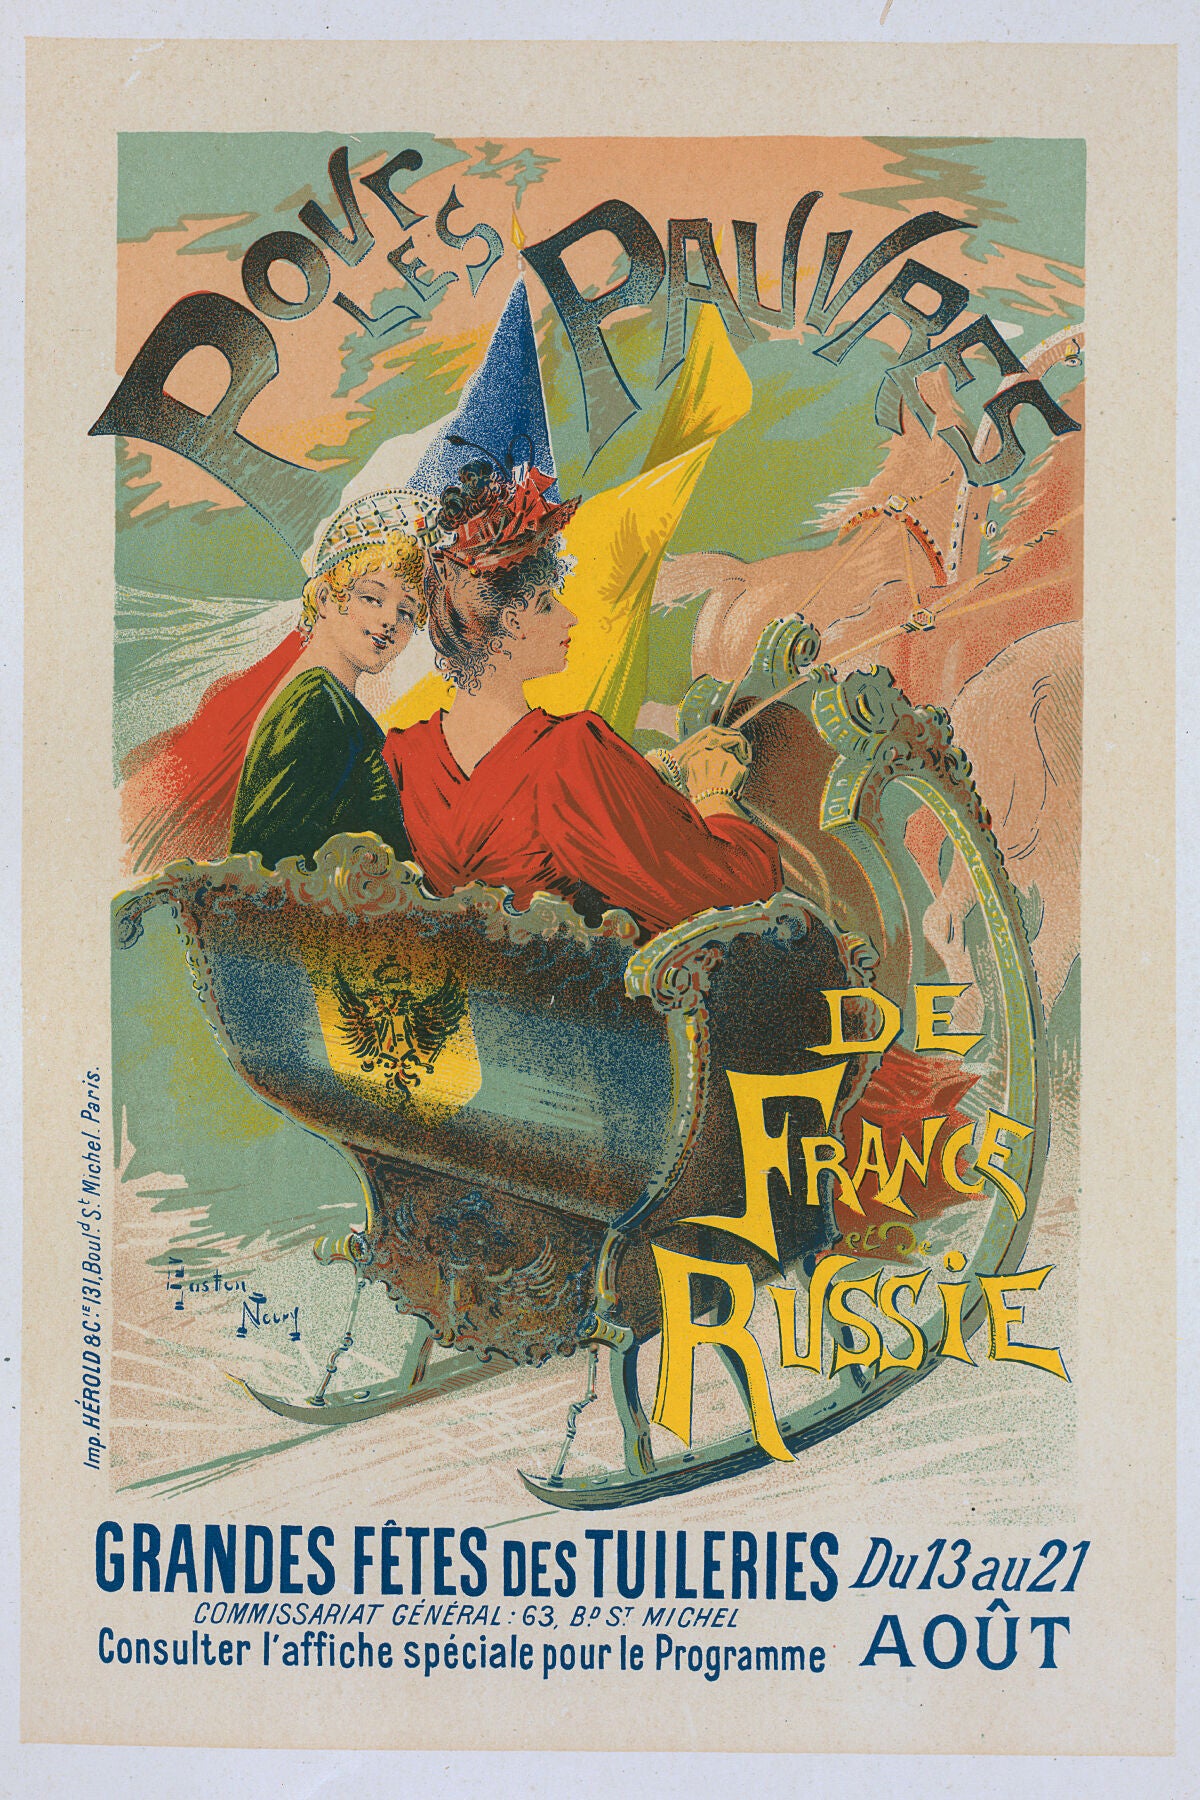 Les Grandes Fêtes des Tuileries by Gaston Noury - 1896